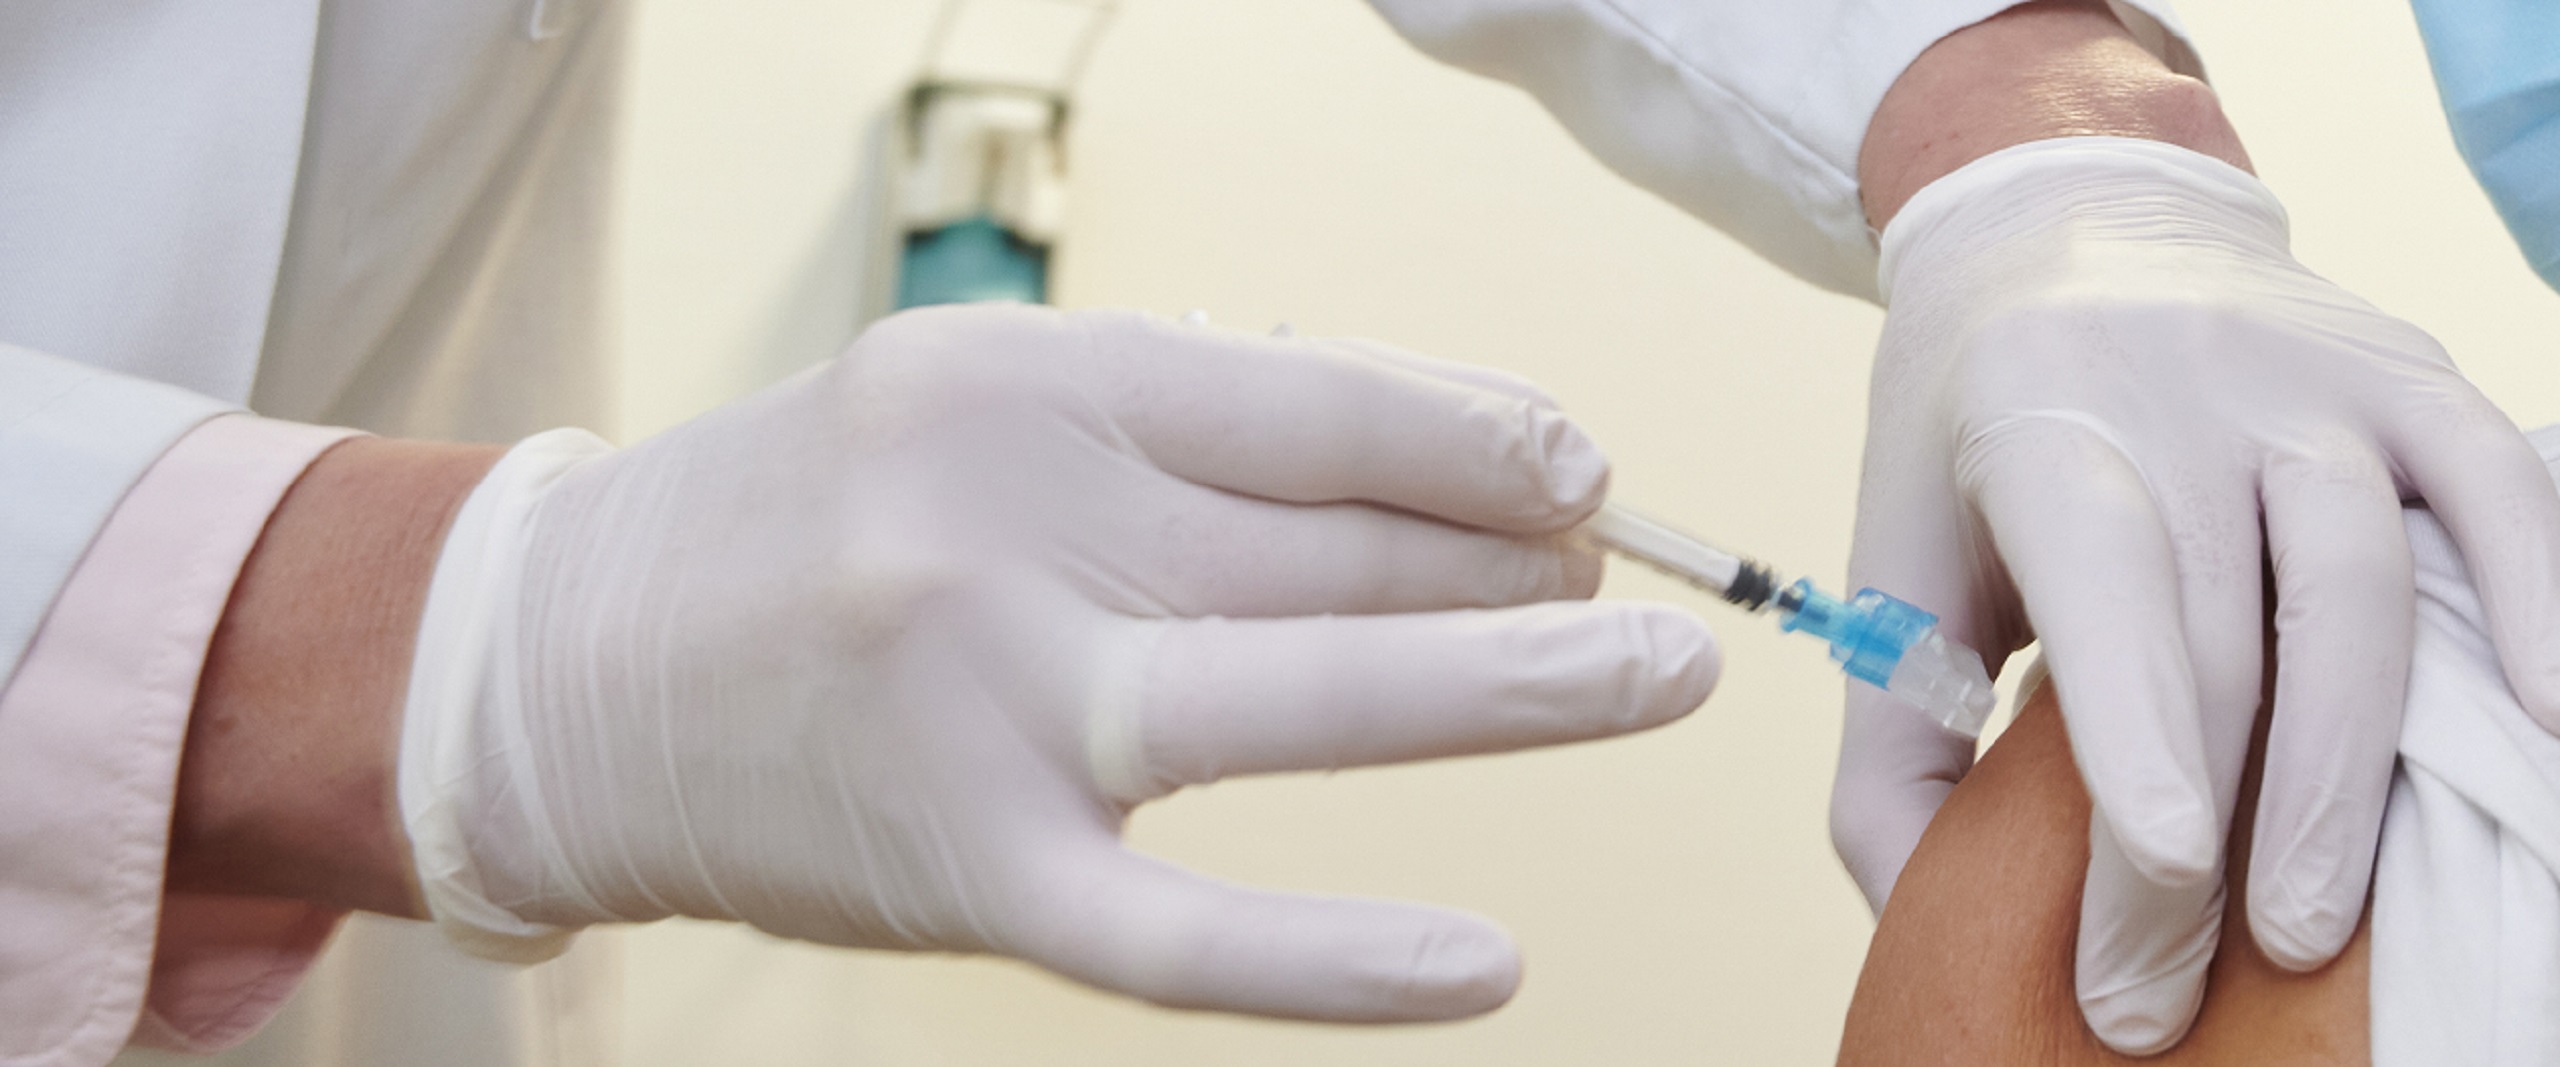 KeepCoool – Impfstofflagerung in Arztpraxen